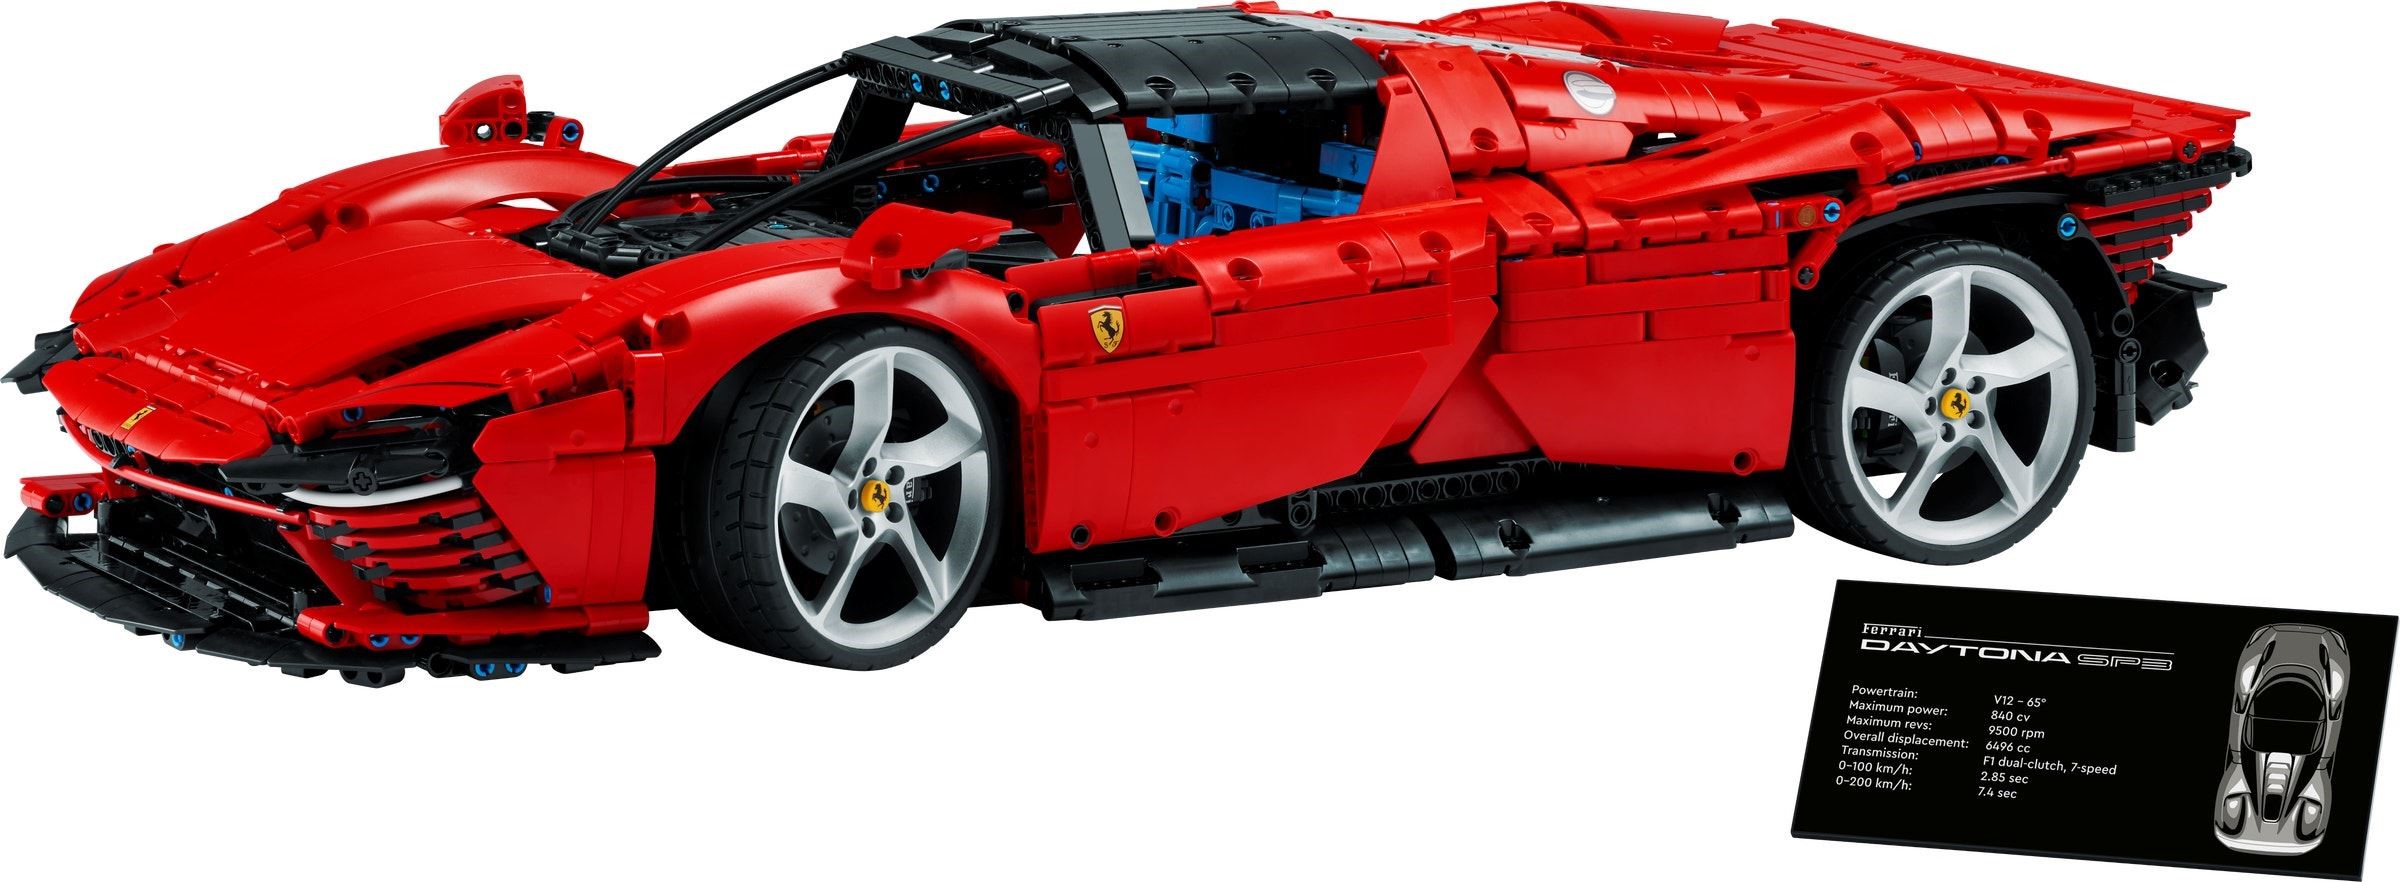 Moske behagelig Sui Technic Ferrari Daytona SP3 revealed! | Brickset